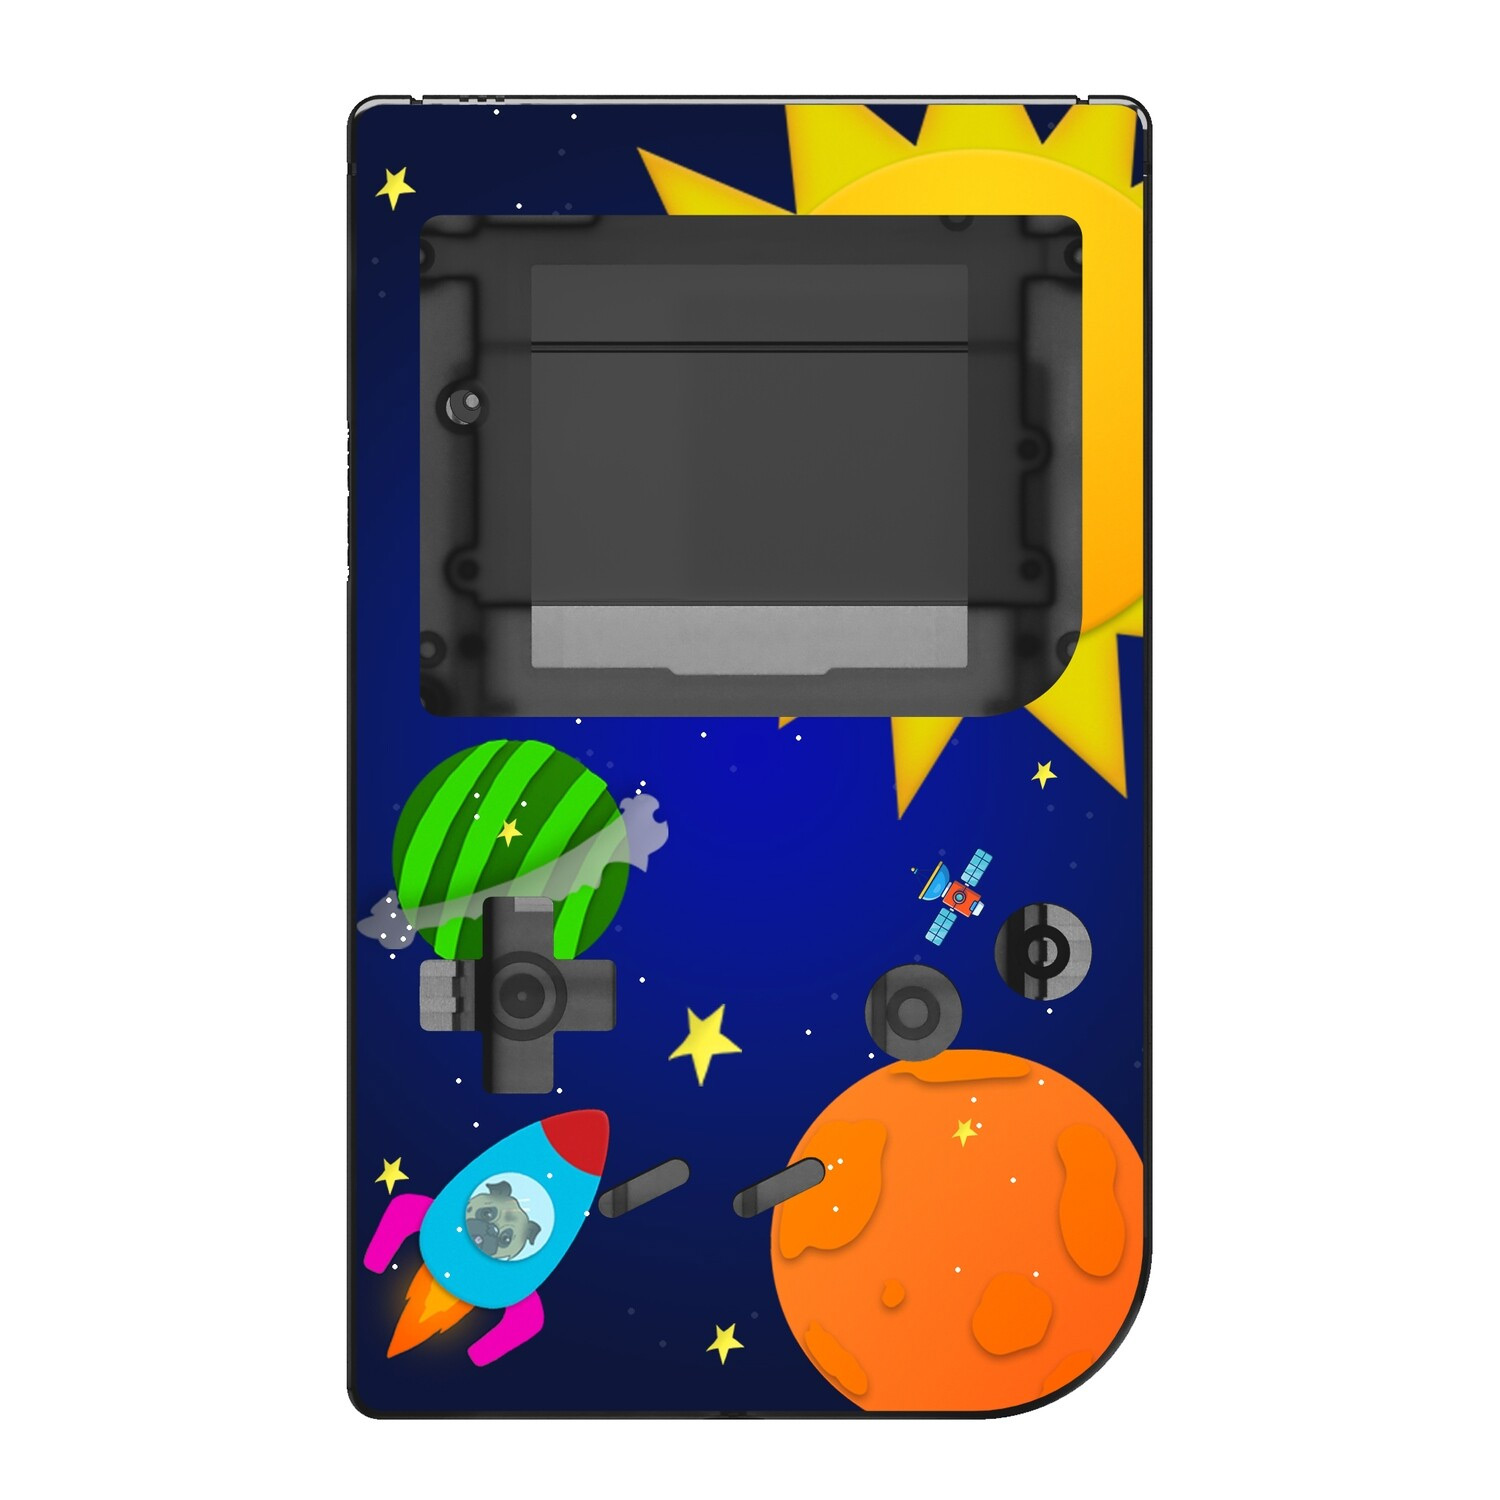 Gehäuse (Space Race) für Game Boy Classic